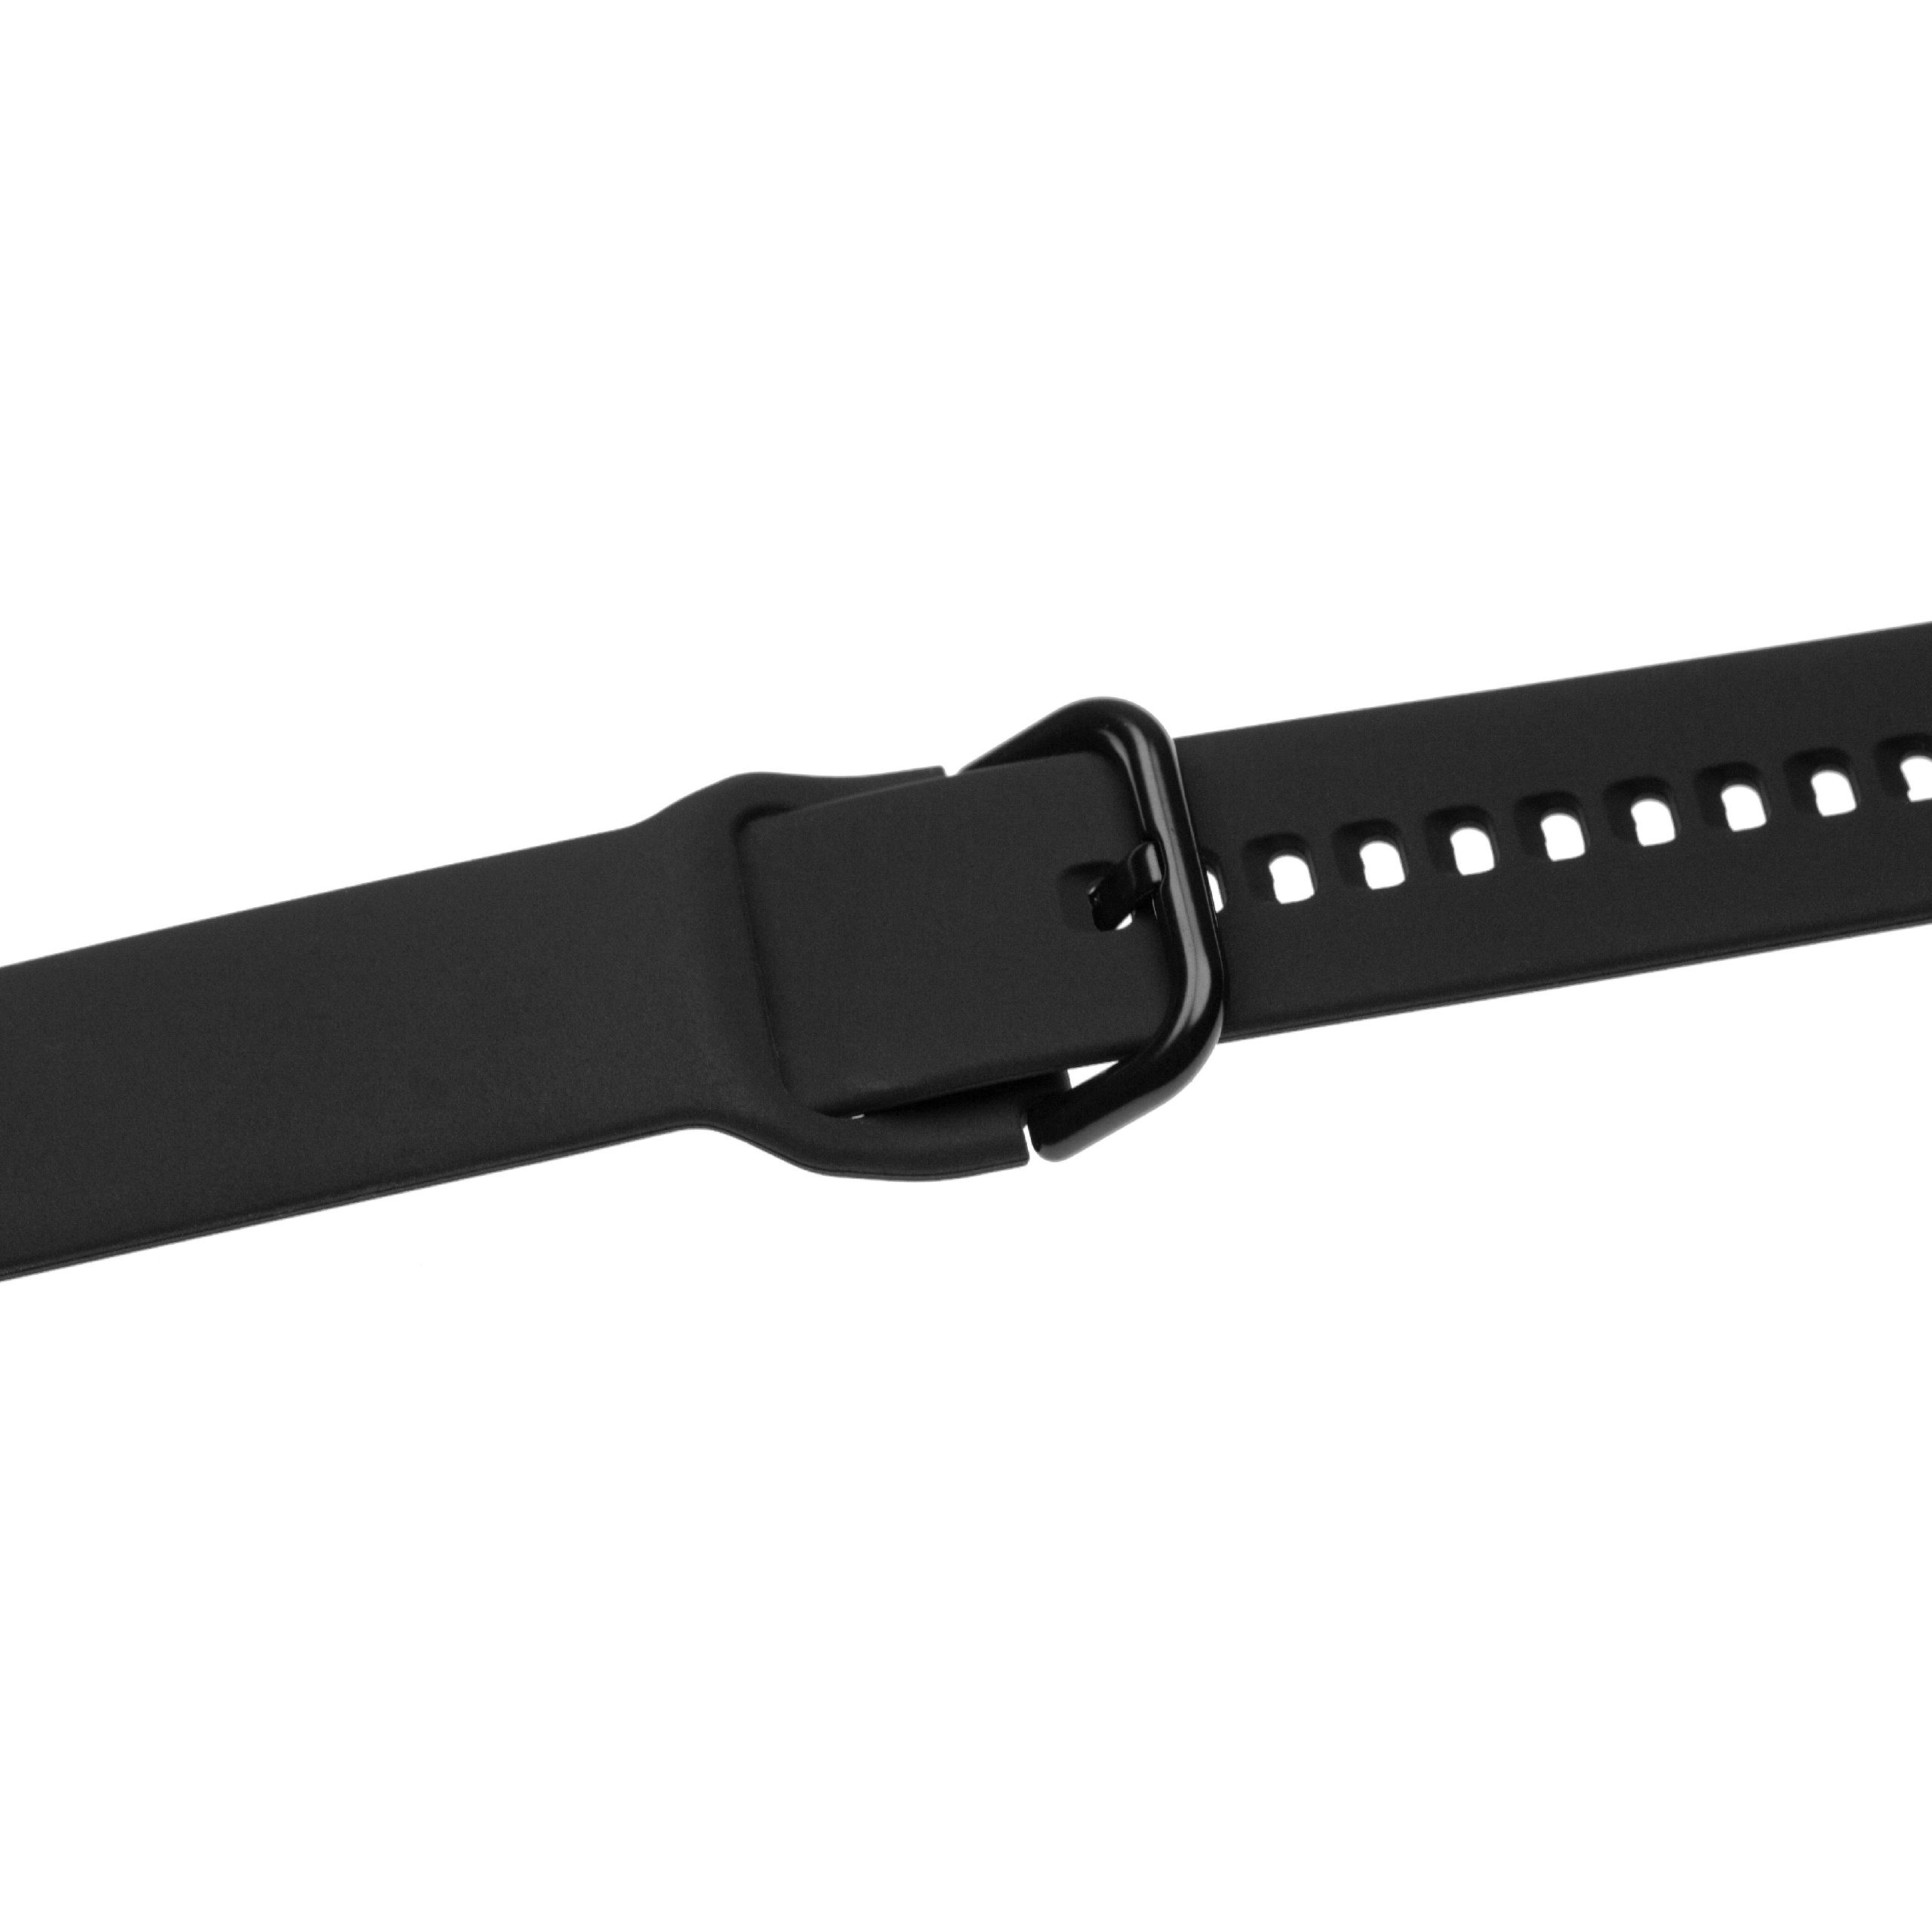 Pasek do smartwatch Samsung Galaxy Watch - dł. 13 + 8,8 cm, szer. 20 mm, silikon, czarny